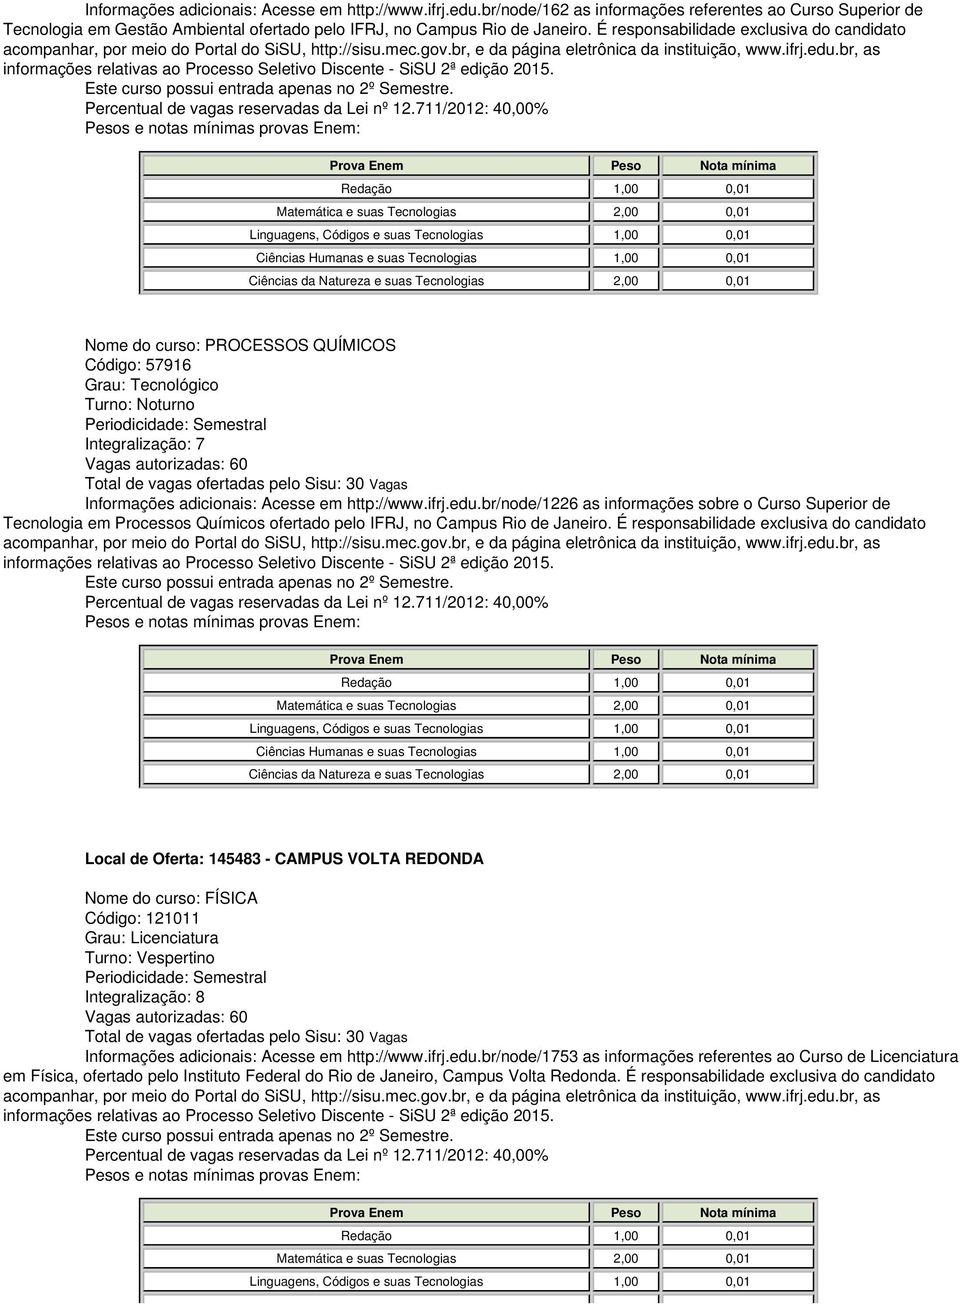 http://www.ifrj.edu.br/node/1226 as informações sobre o Curso Superior de Tecnologia em Processos Químicos ofertado pelo IFRJ, no Campus Rio de Janeiro.